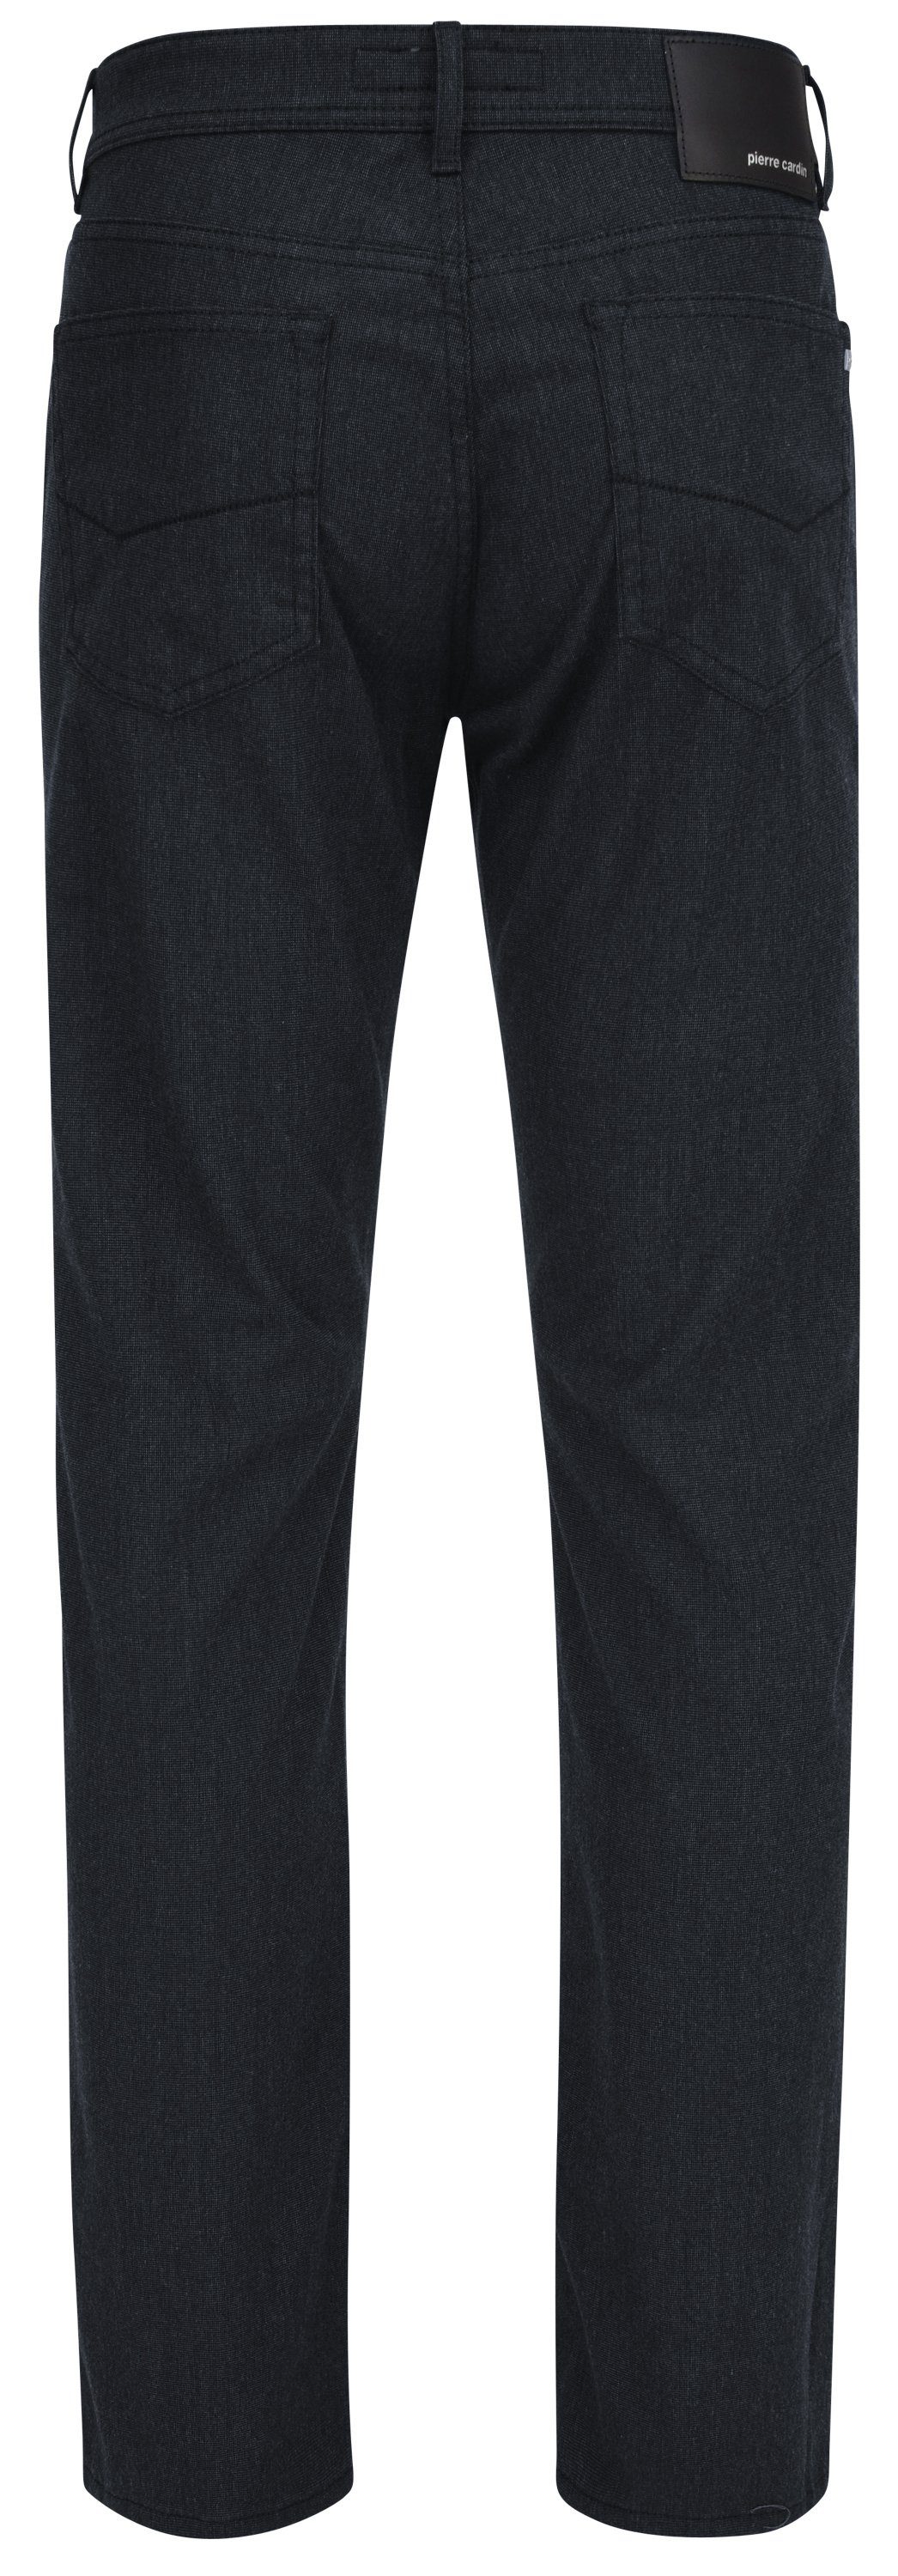 Cardin PIERRE Pierre 5-Pocket-Jeans marine VOYAGE 4715.69 3091 - CARDIN LYON